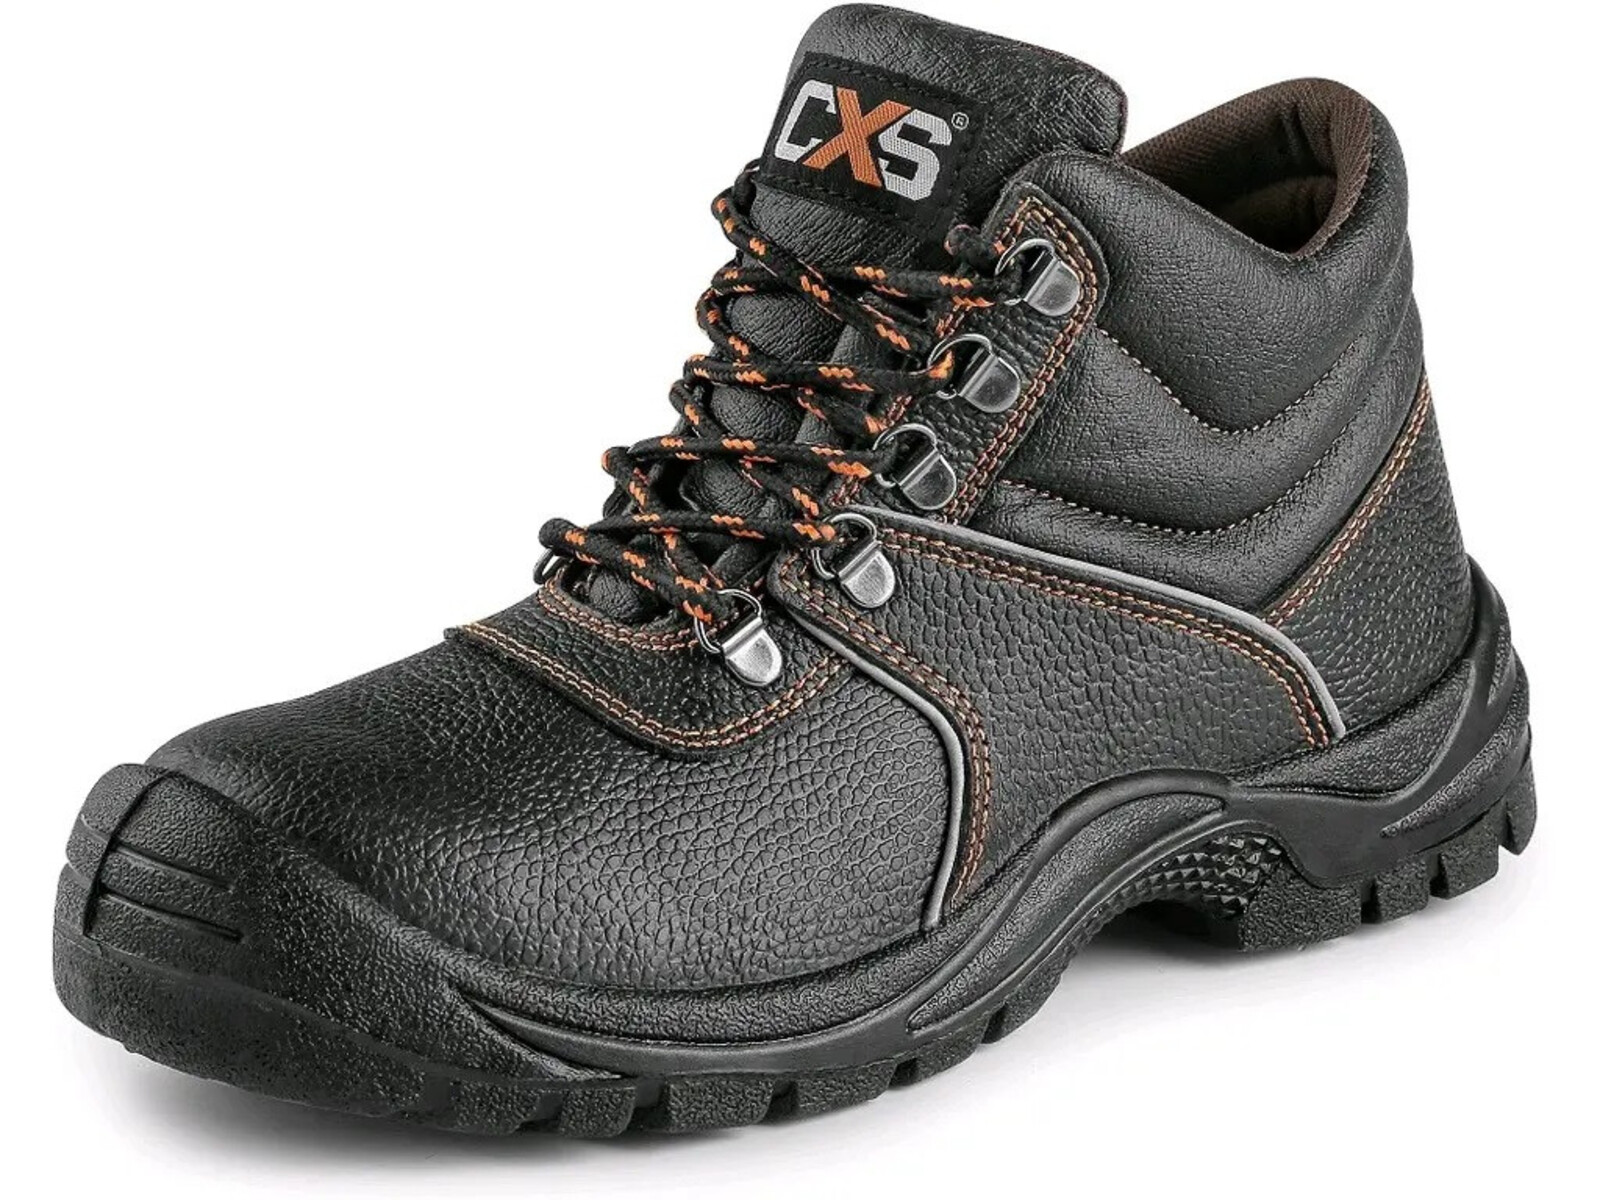 Bezpečnostná členková obuv CXS Stone Marble S3 SRC - veľkosť: 43, farba: čierna/oranžová